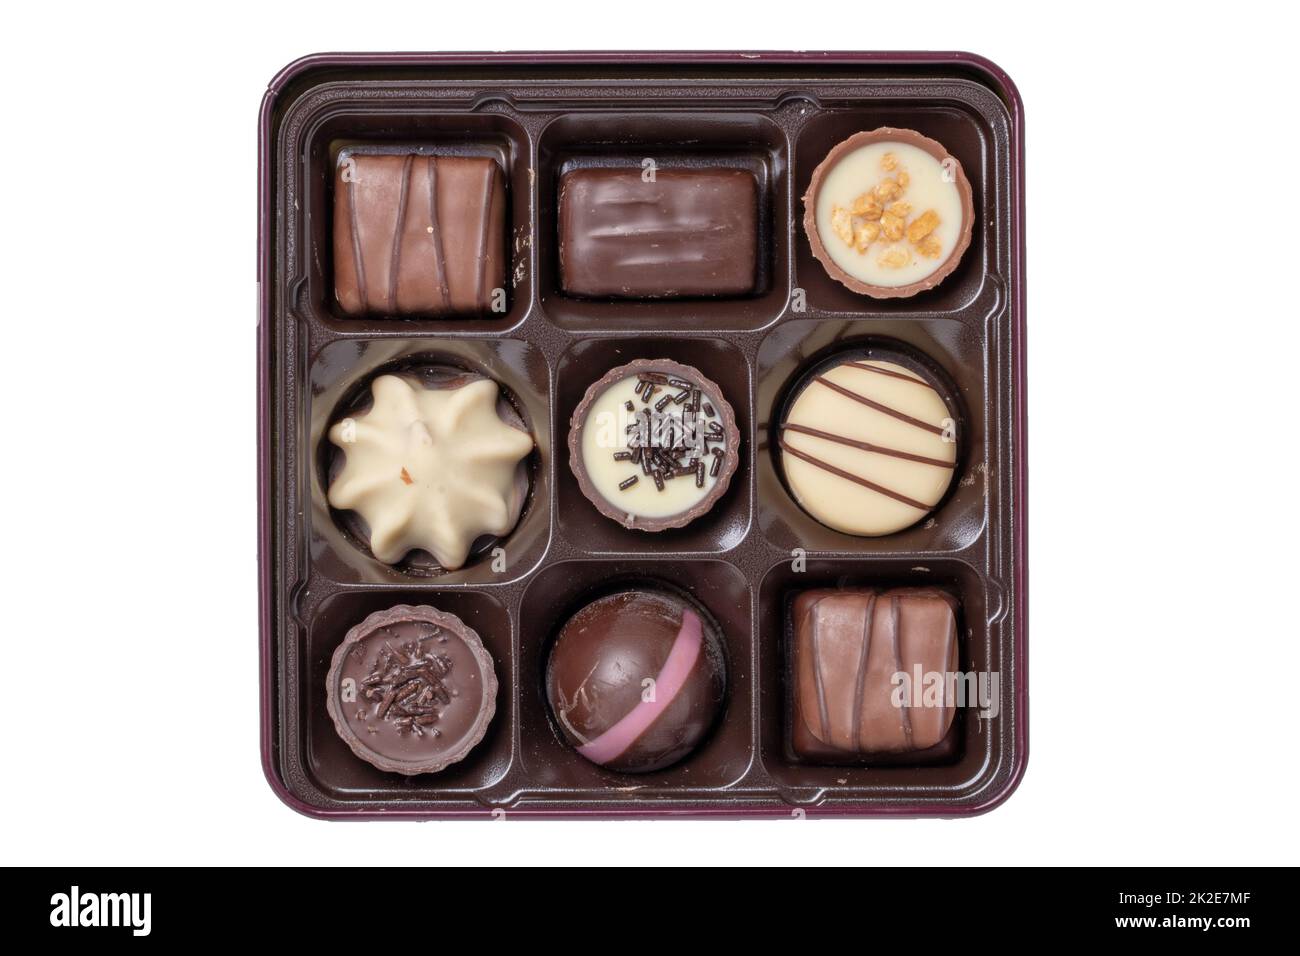 Nahaufnahme einer Schachtel mit feinen Schokoladenbonbons in einer wunderschönen Plastikbox isoliert auf weißem Hintergrund. Überraschungsgeschenk zum Valentinstag oder zu anderen festlichen Anlässen. Makro. Stockfoto